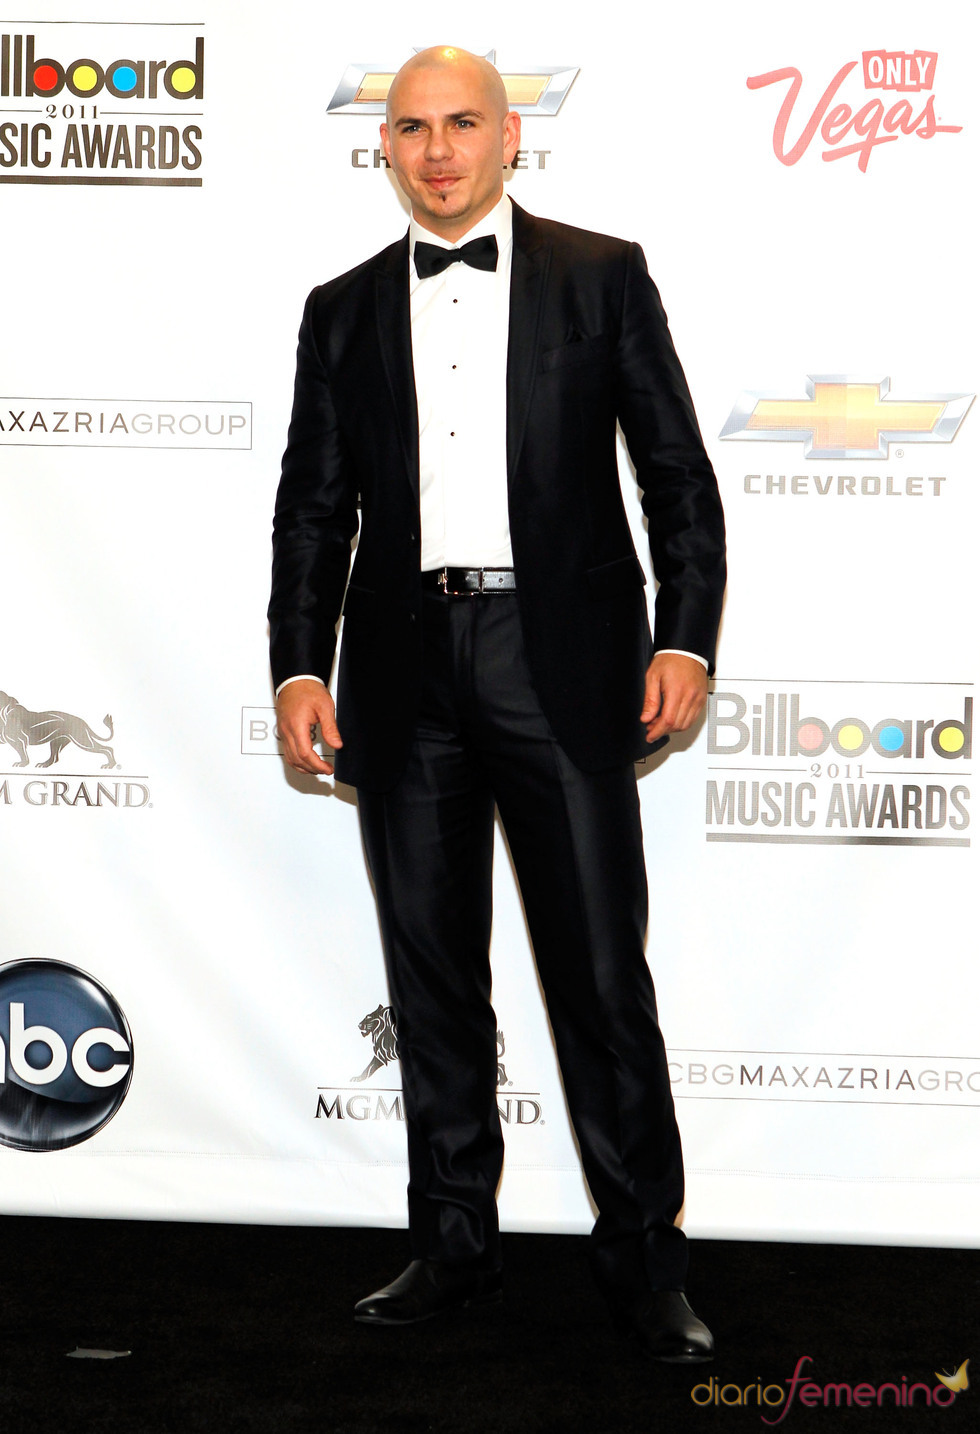 Pitbull en los Billboard MUSIC AWARDS 2011 - Fotos de ocio en Diario ...